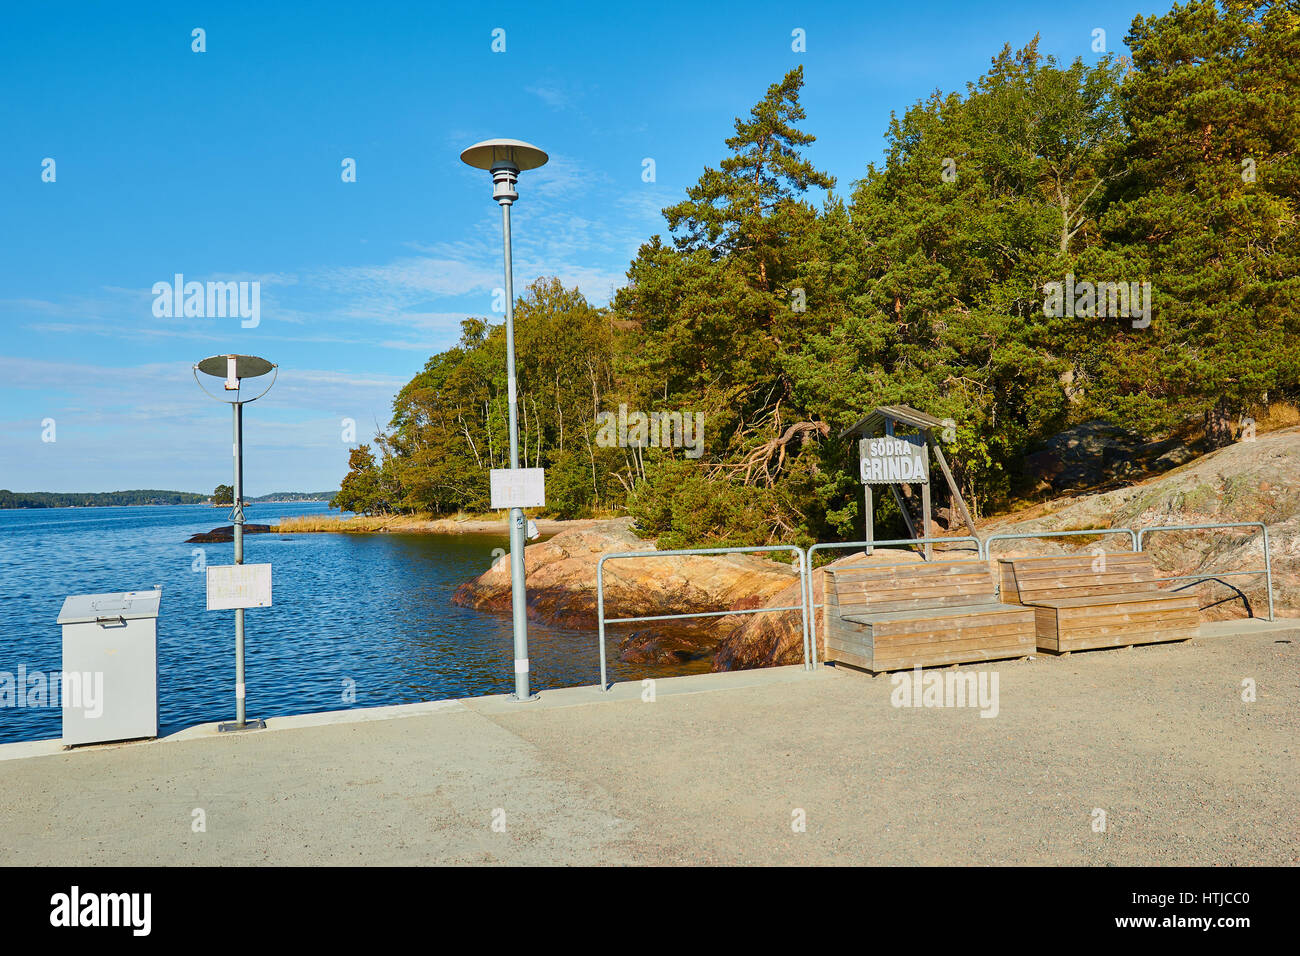 Sodra Grinda (pilier sud)'embarcadère sur l'île de Grinda, archipel de Stockholm, Suède, Scandinavie Banque D'Images